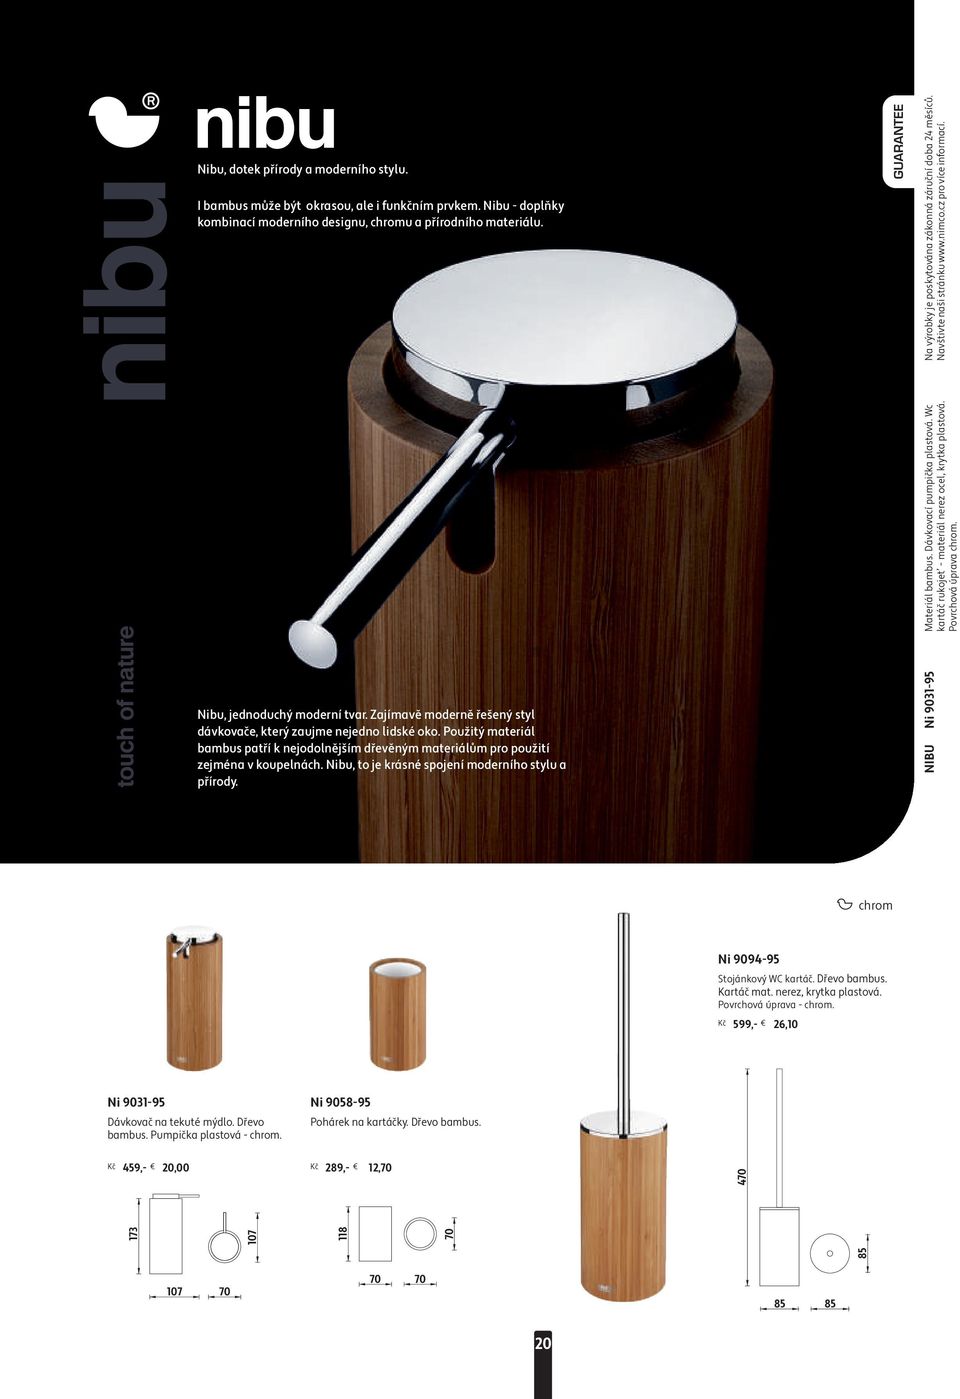 Použitý materiál bambus patří k nejodolnějším dřevěným materiálům pro použití zejména v koupelnách. Nibu, to je krásné spojení moderního stylu a přírody. GUARANTEE NIBU Ni 9031-95 Materiál bambus.